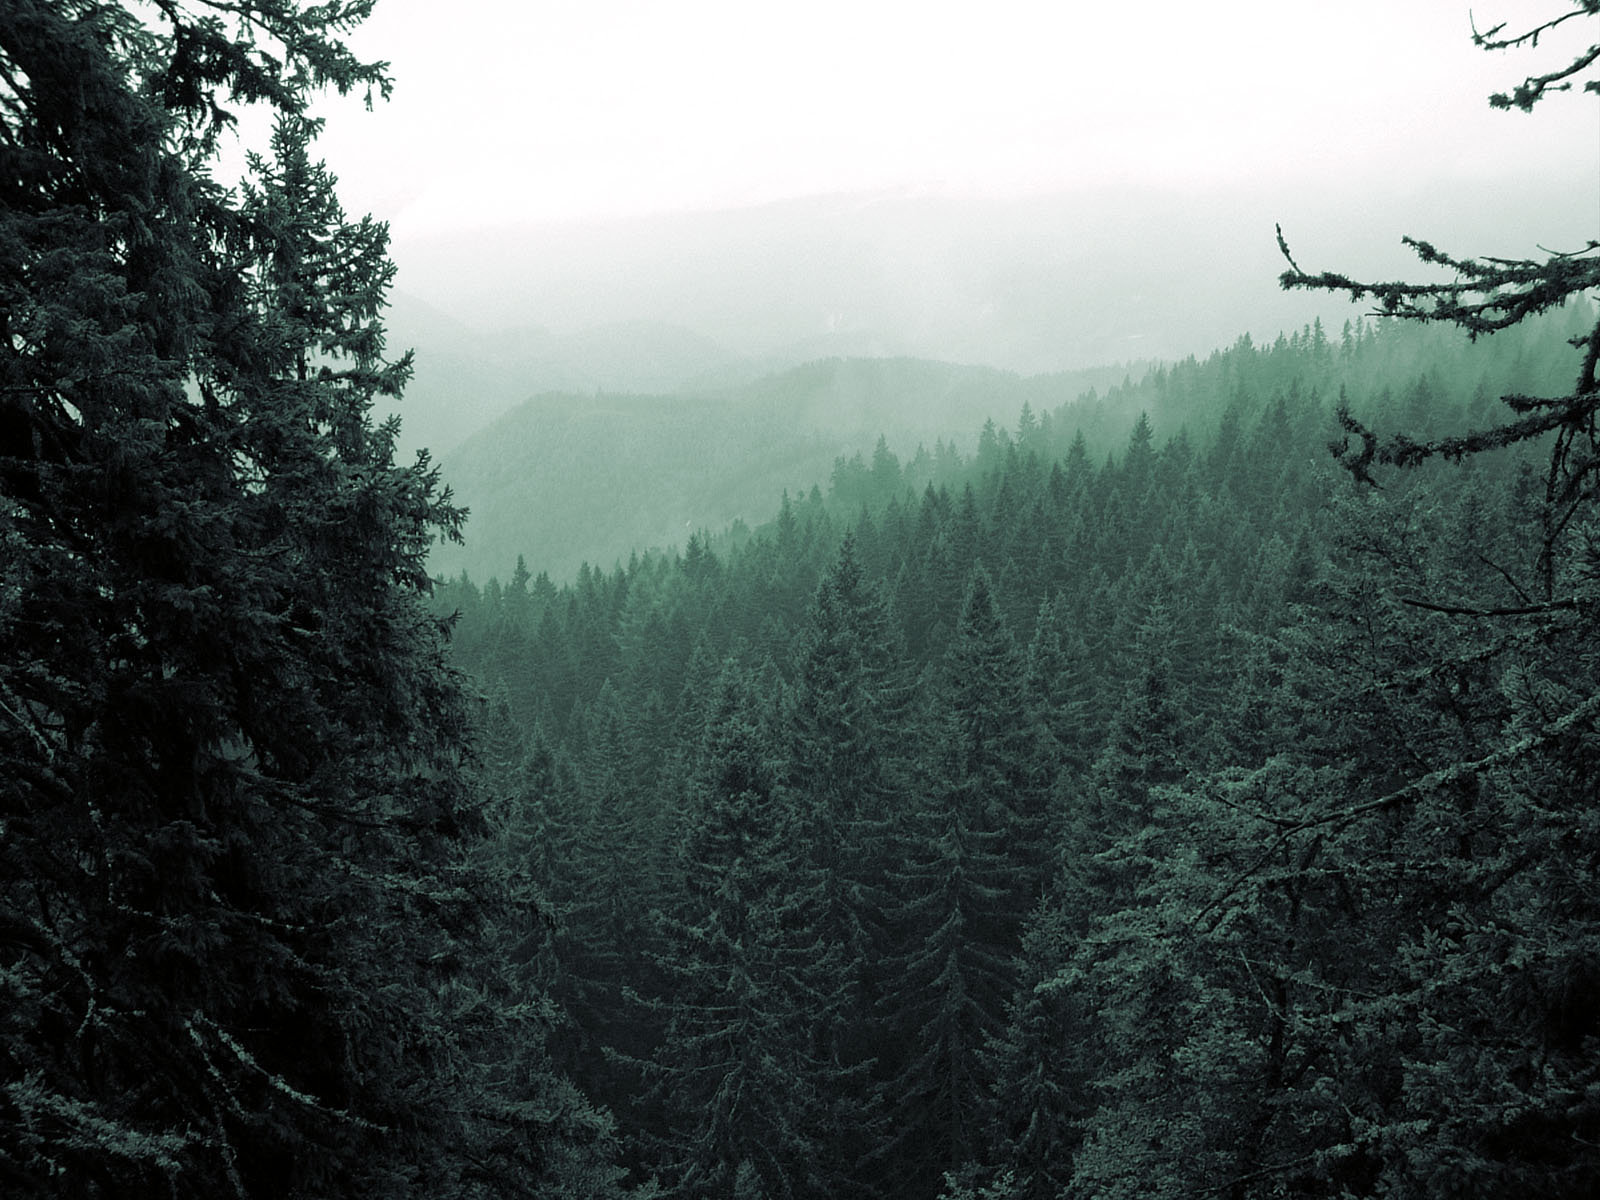 Alpine Forest by iammenotu on DeviantArt